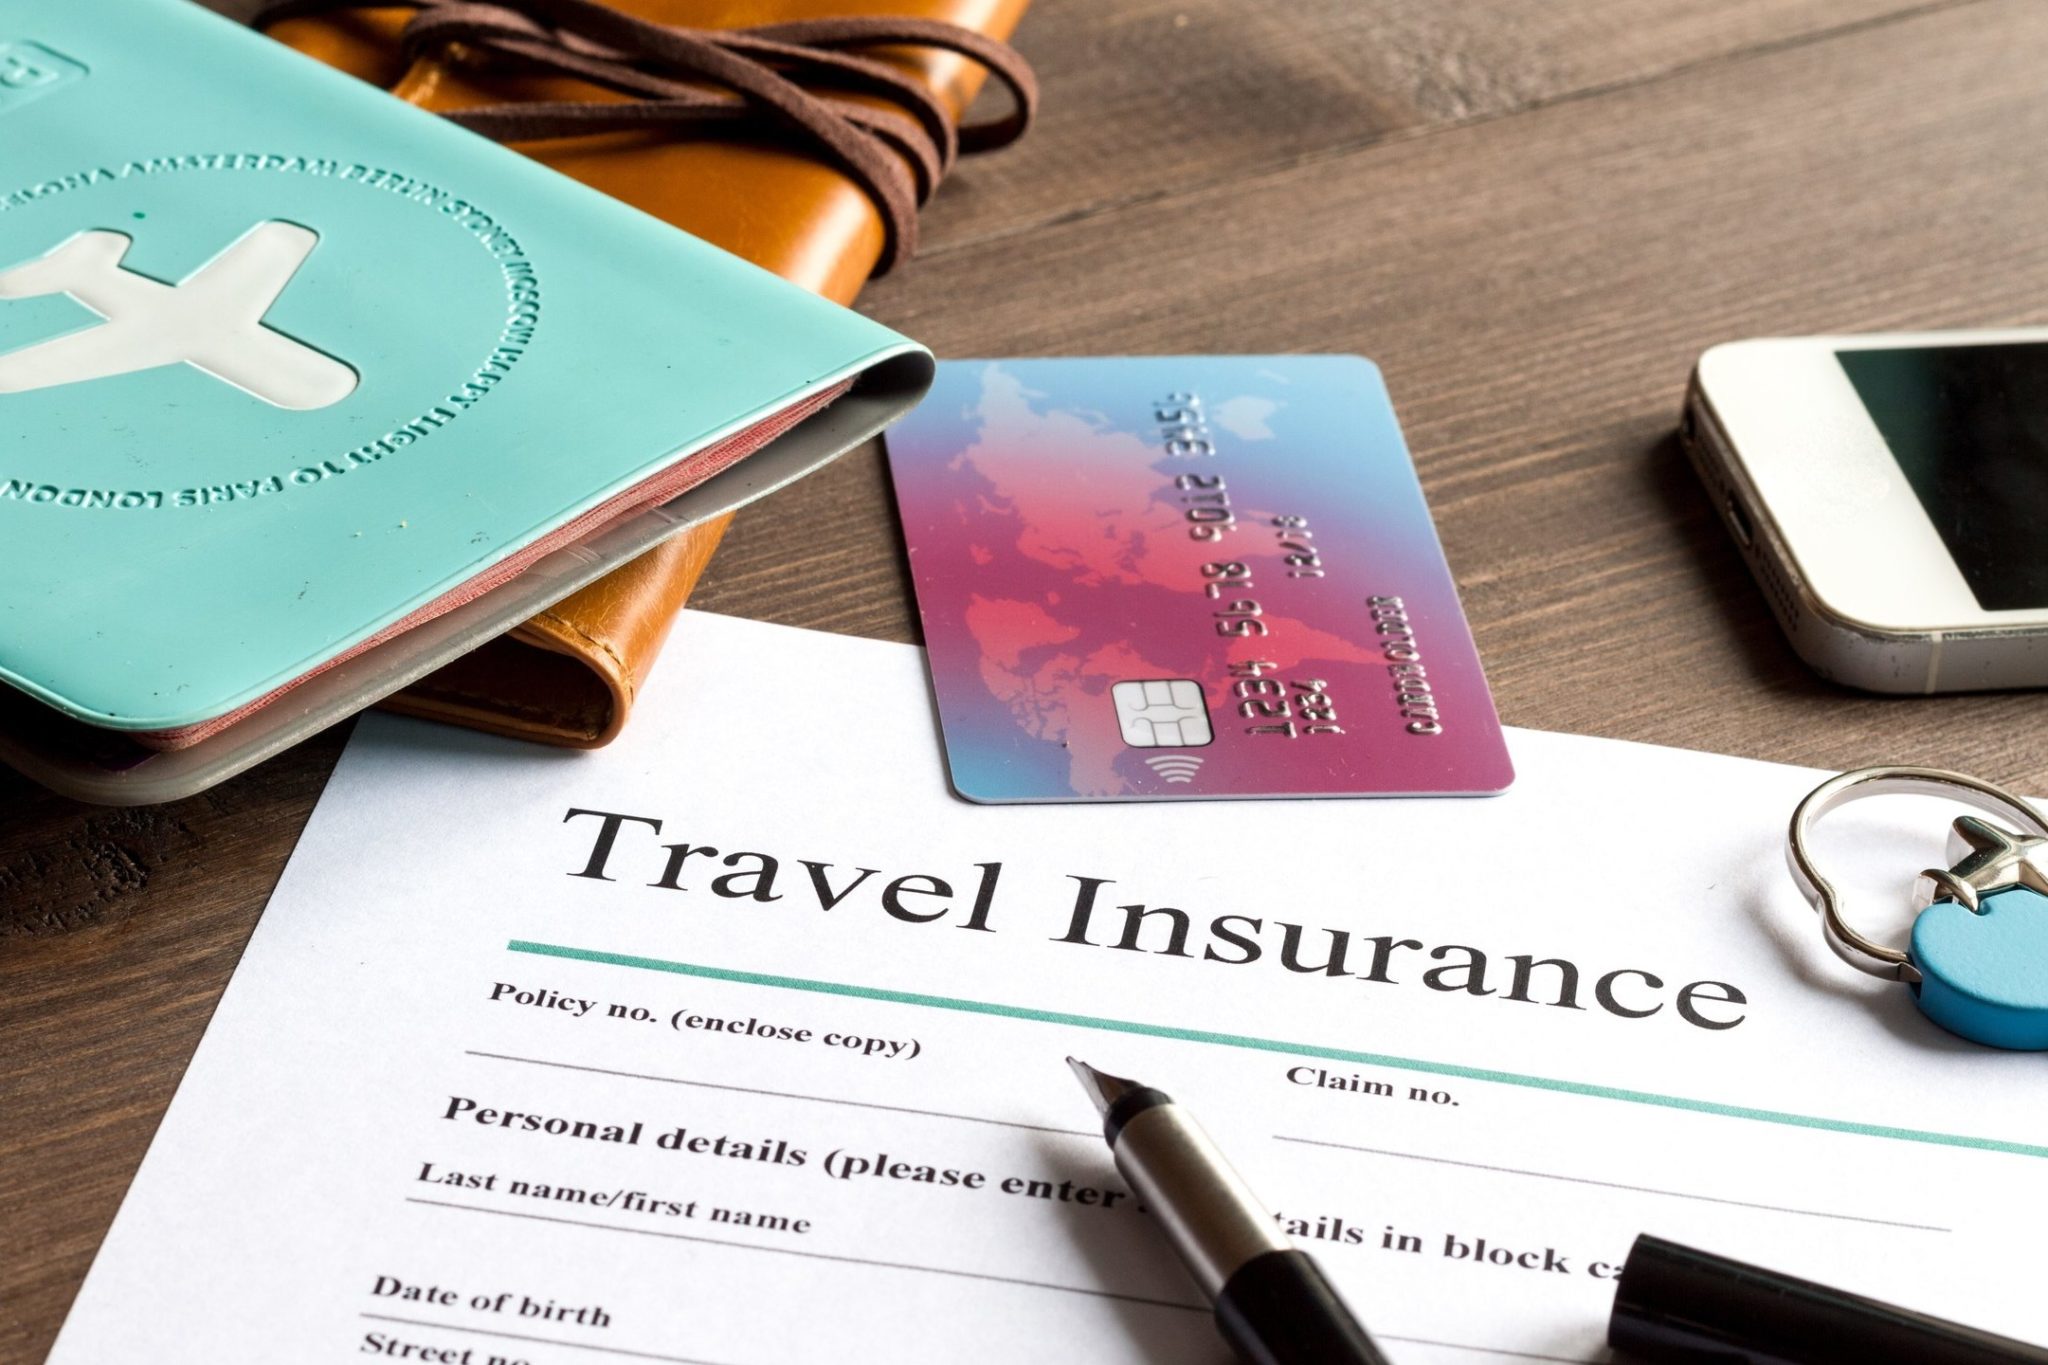 bmo world elite mastercard travel insurance over 65